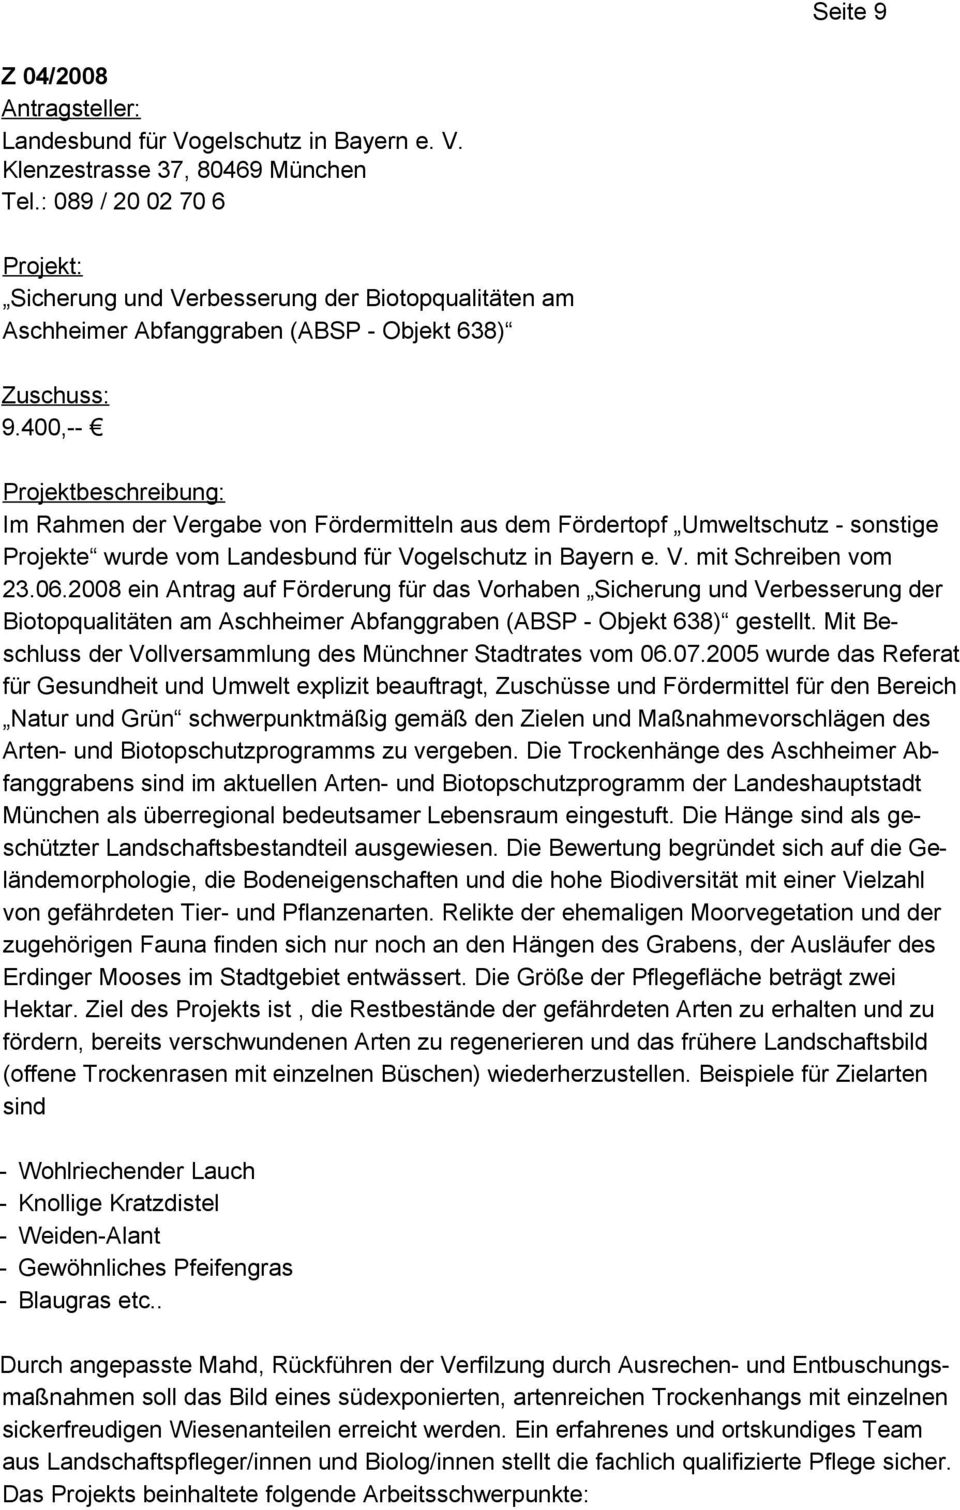 400,-- Projektbeschreibung: Im Rahmen der Vergabe von Fördermitteln aus dem Fördertopf Umweltschutz - sonstige Projekte wurde vom Landesbund für Vogelschutz in Bayern e. V. mit Schreiben vom 23.06.